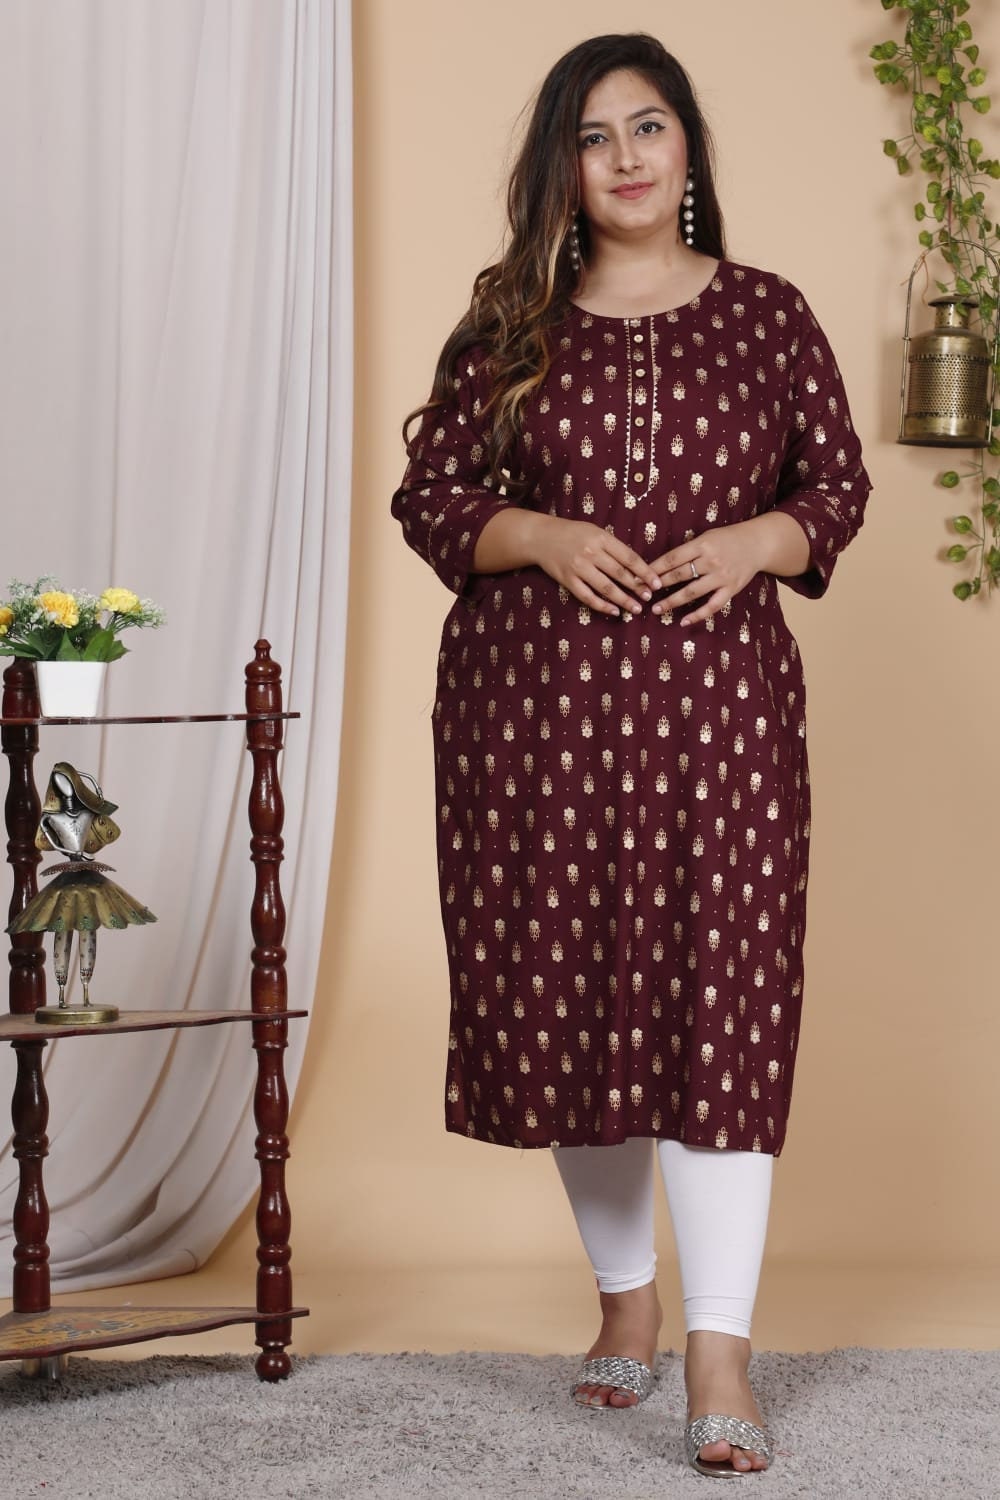 Plus Size Indian Dresses - Buy Plus Size Indian Dresses Online